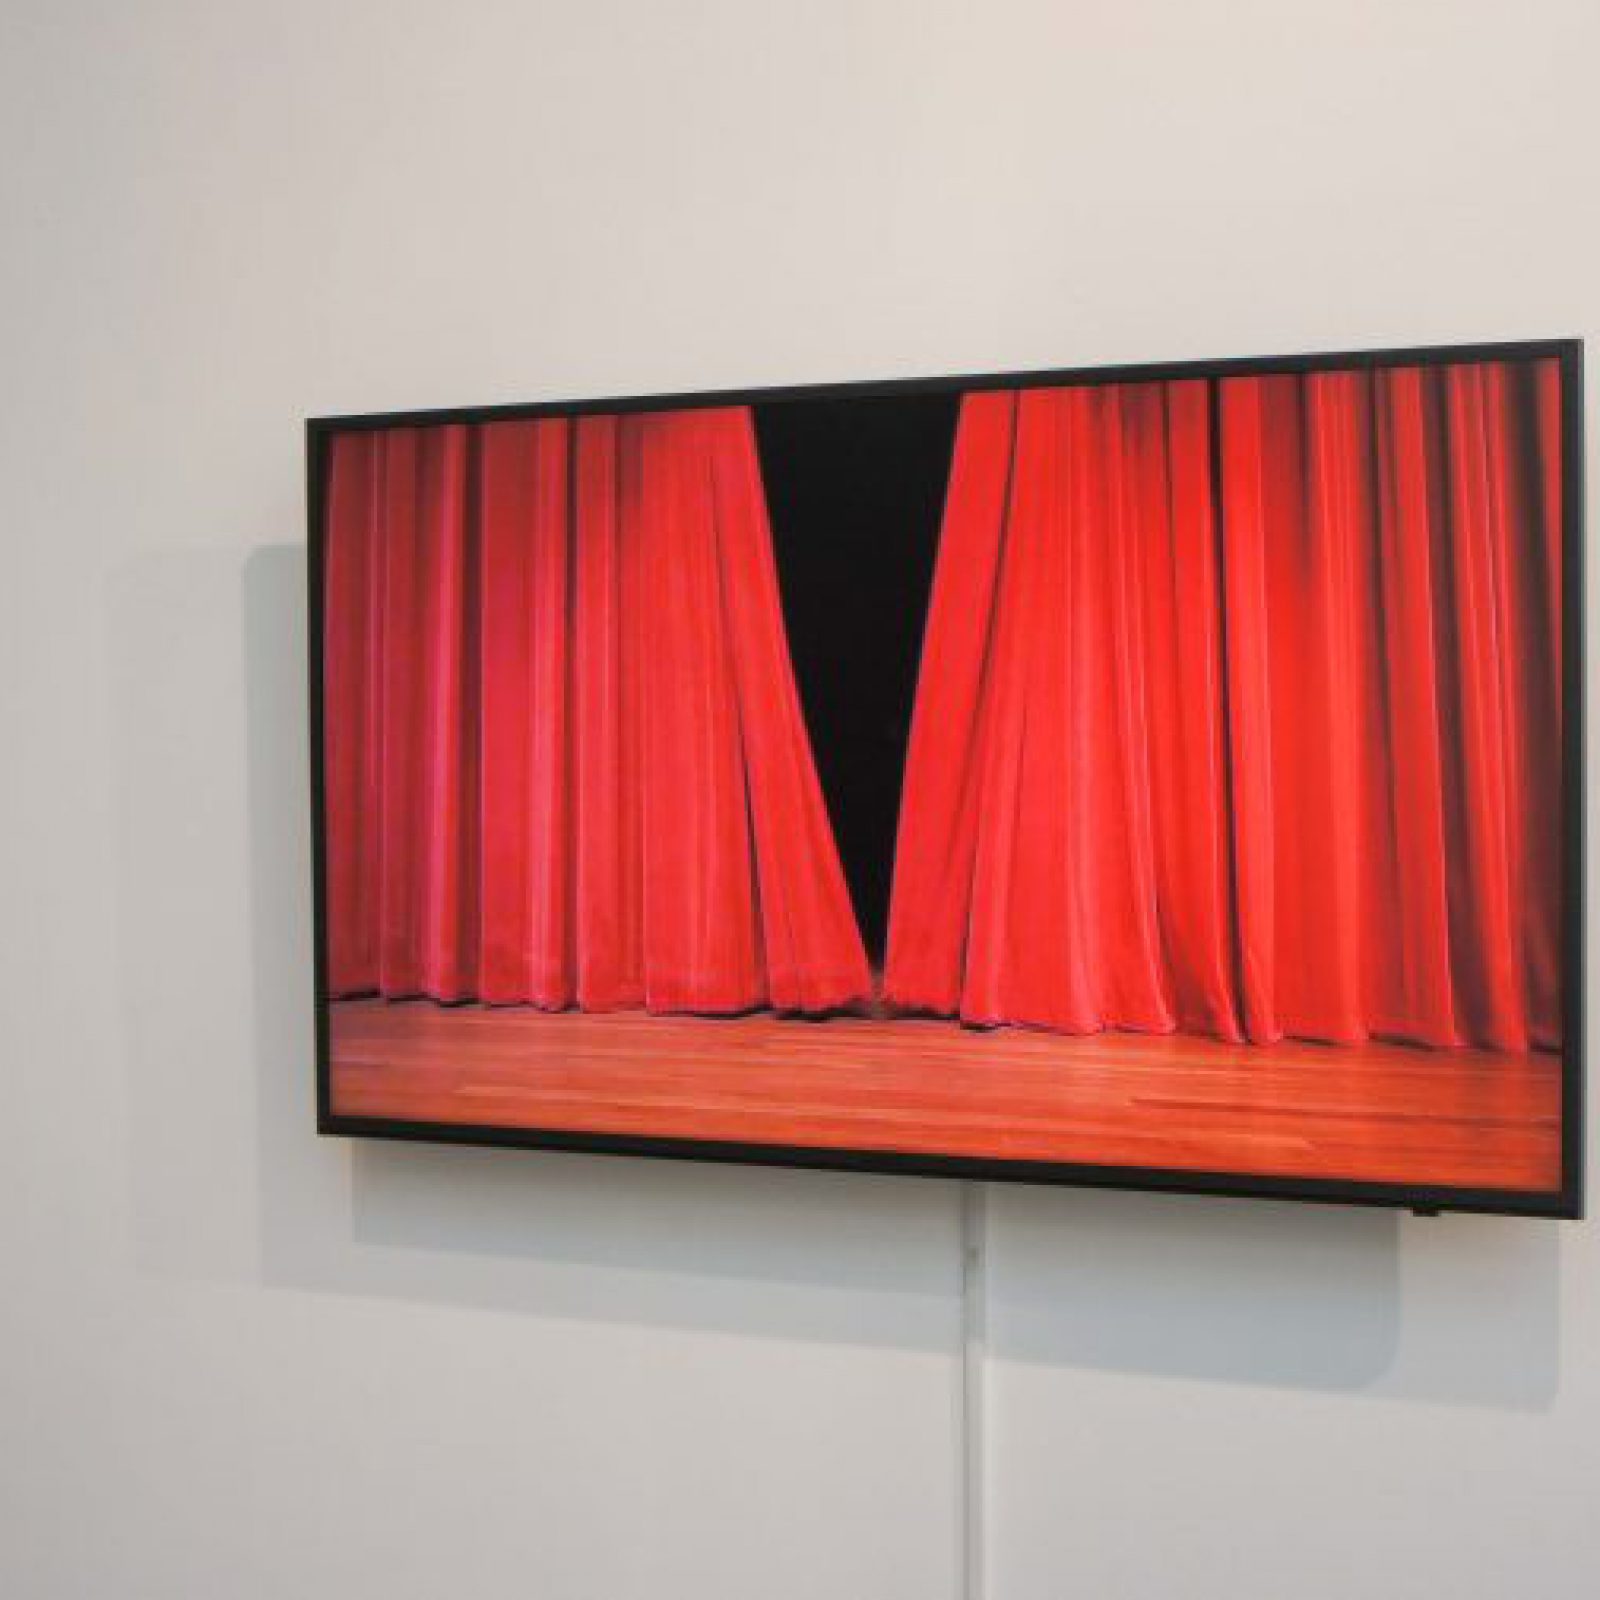 Vista de la exposición "Sin Acto", de Iván Candeo, en la galería Carmen Araujo Arte, Caracas, 2018. Cortesía de la galería